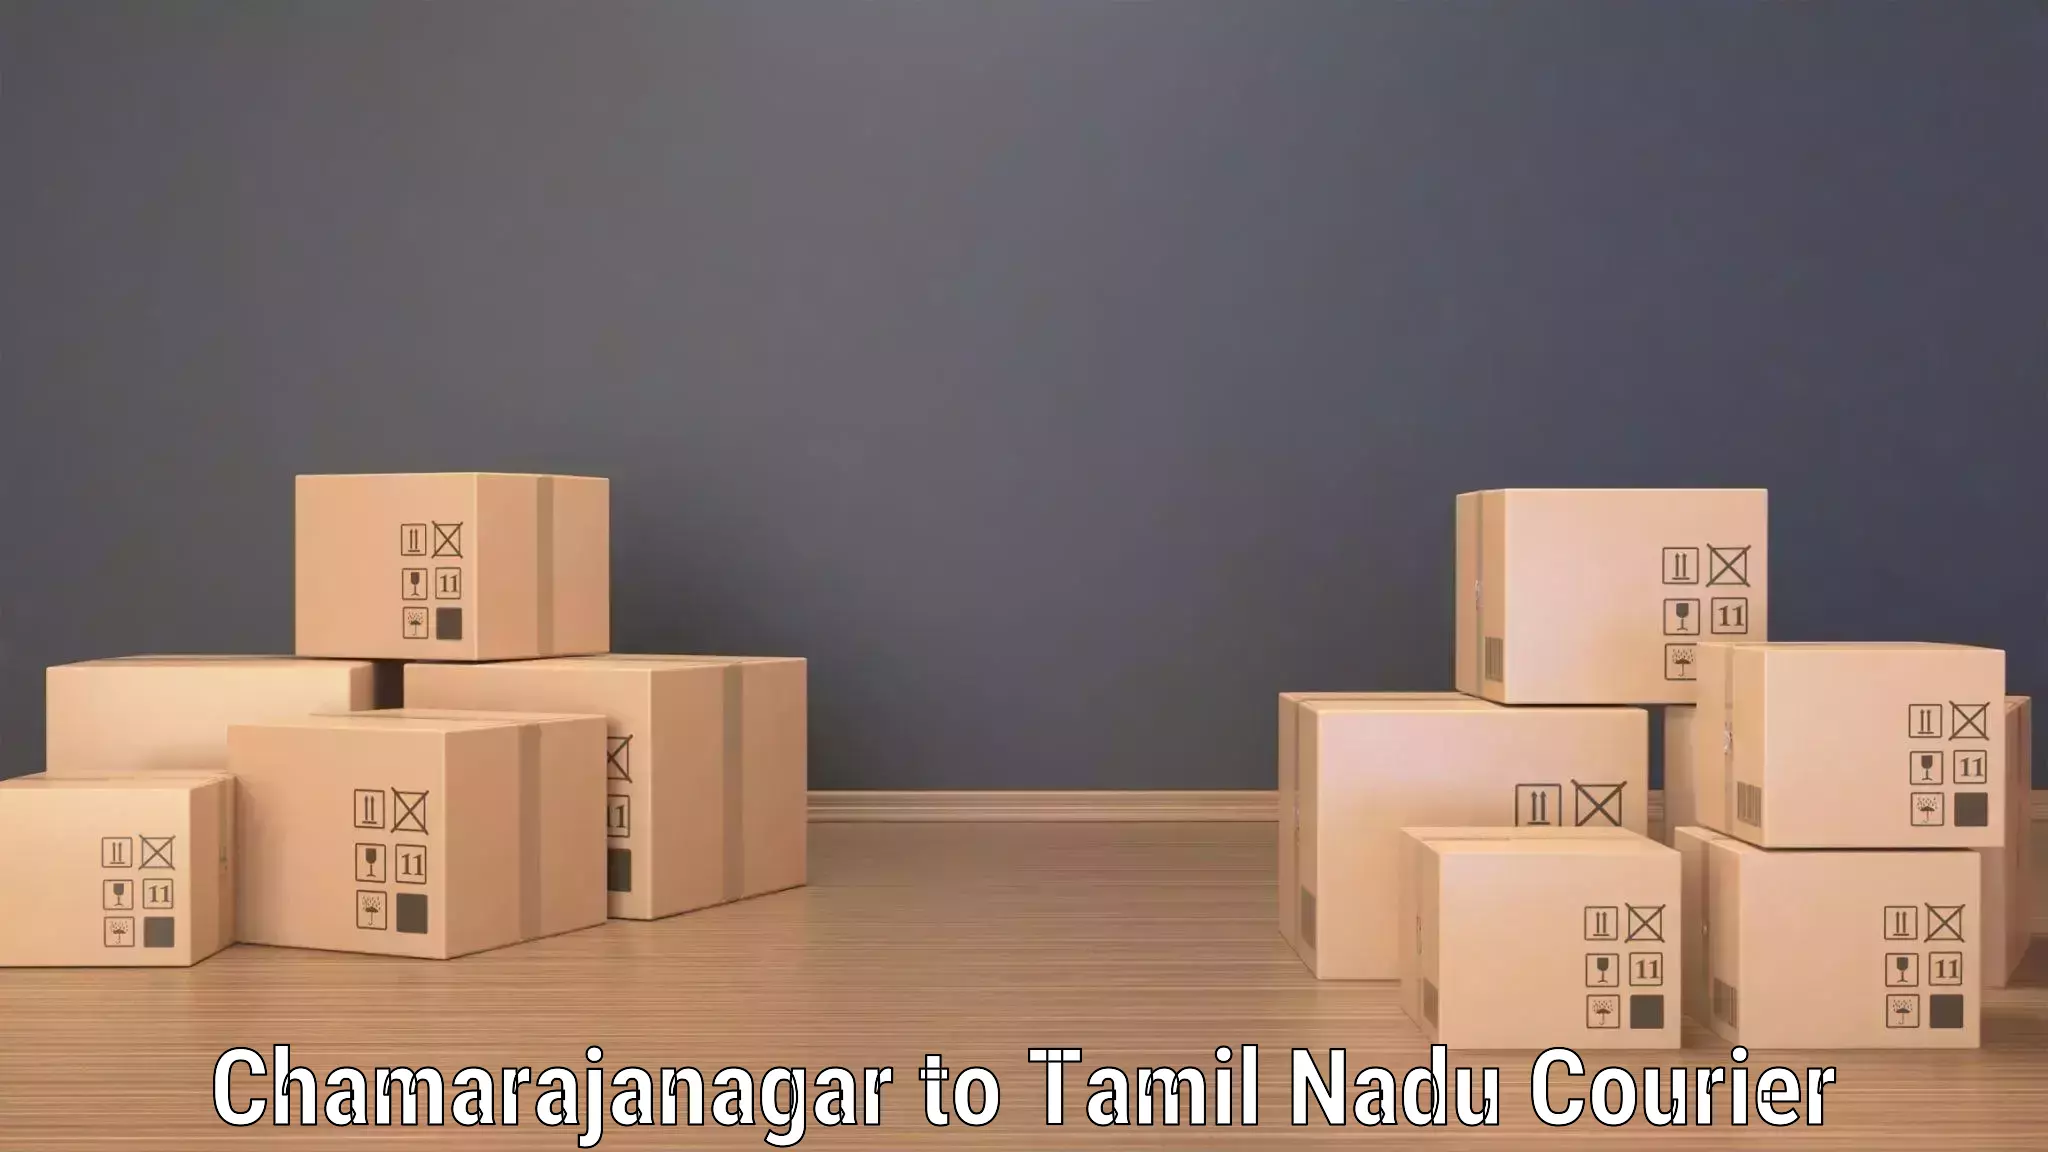 Efficient cargo services Chamarajanagar to Virudhunagar